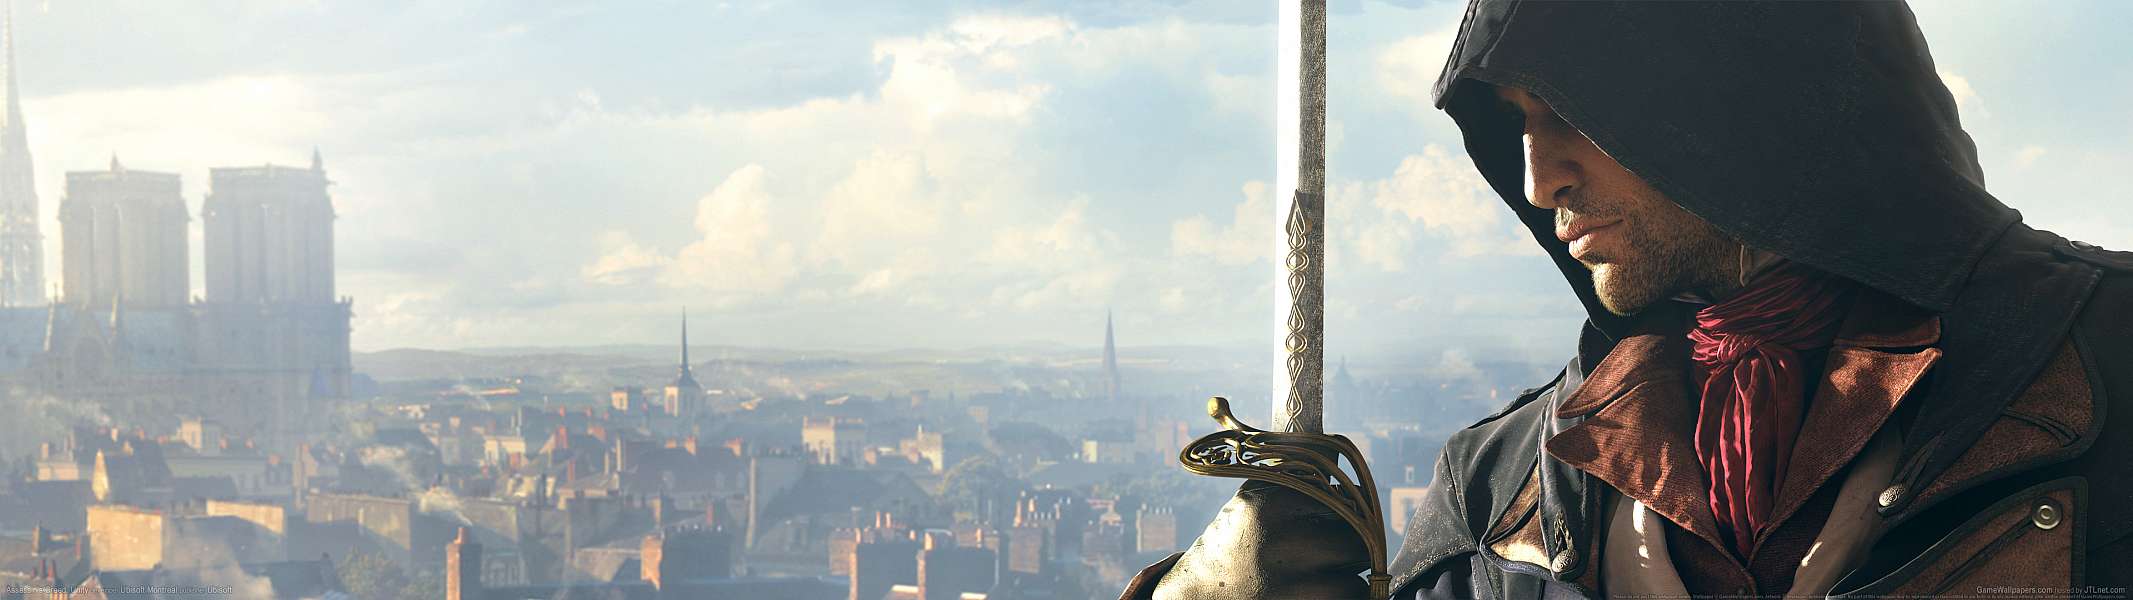 Assassin's Creed: Unity dual screen fond d'écran